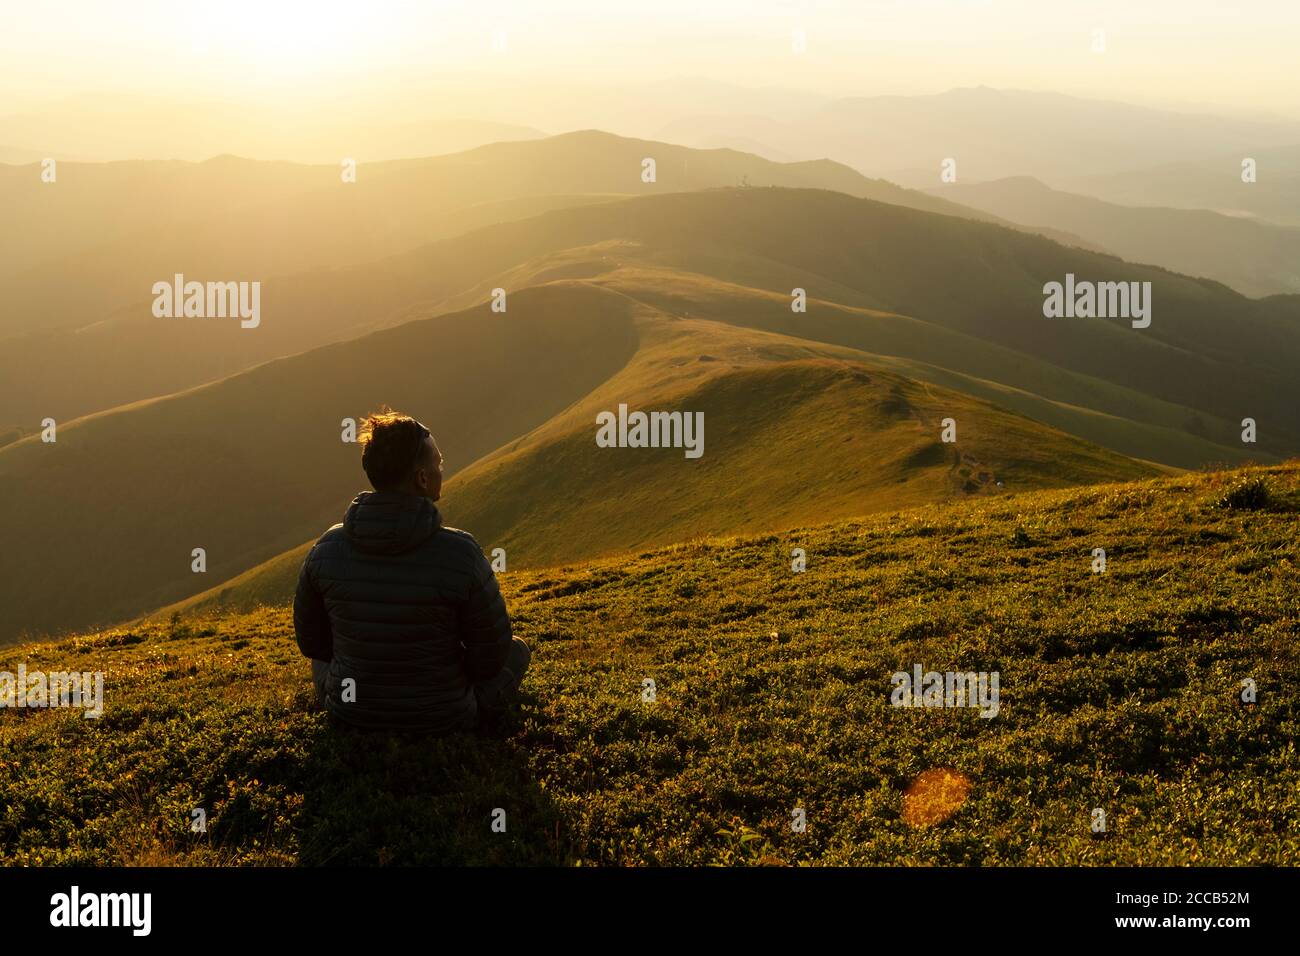 Seul touriste sur le bord de la montagne contre la toile de fond d'un paysage incroyable de montagnes au coucher du soleil Banque D'Images